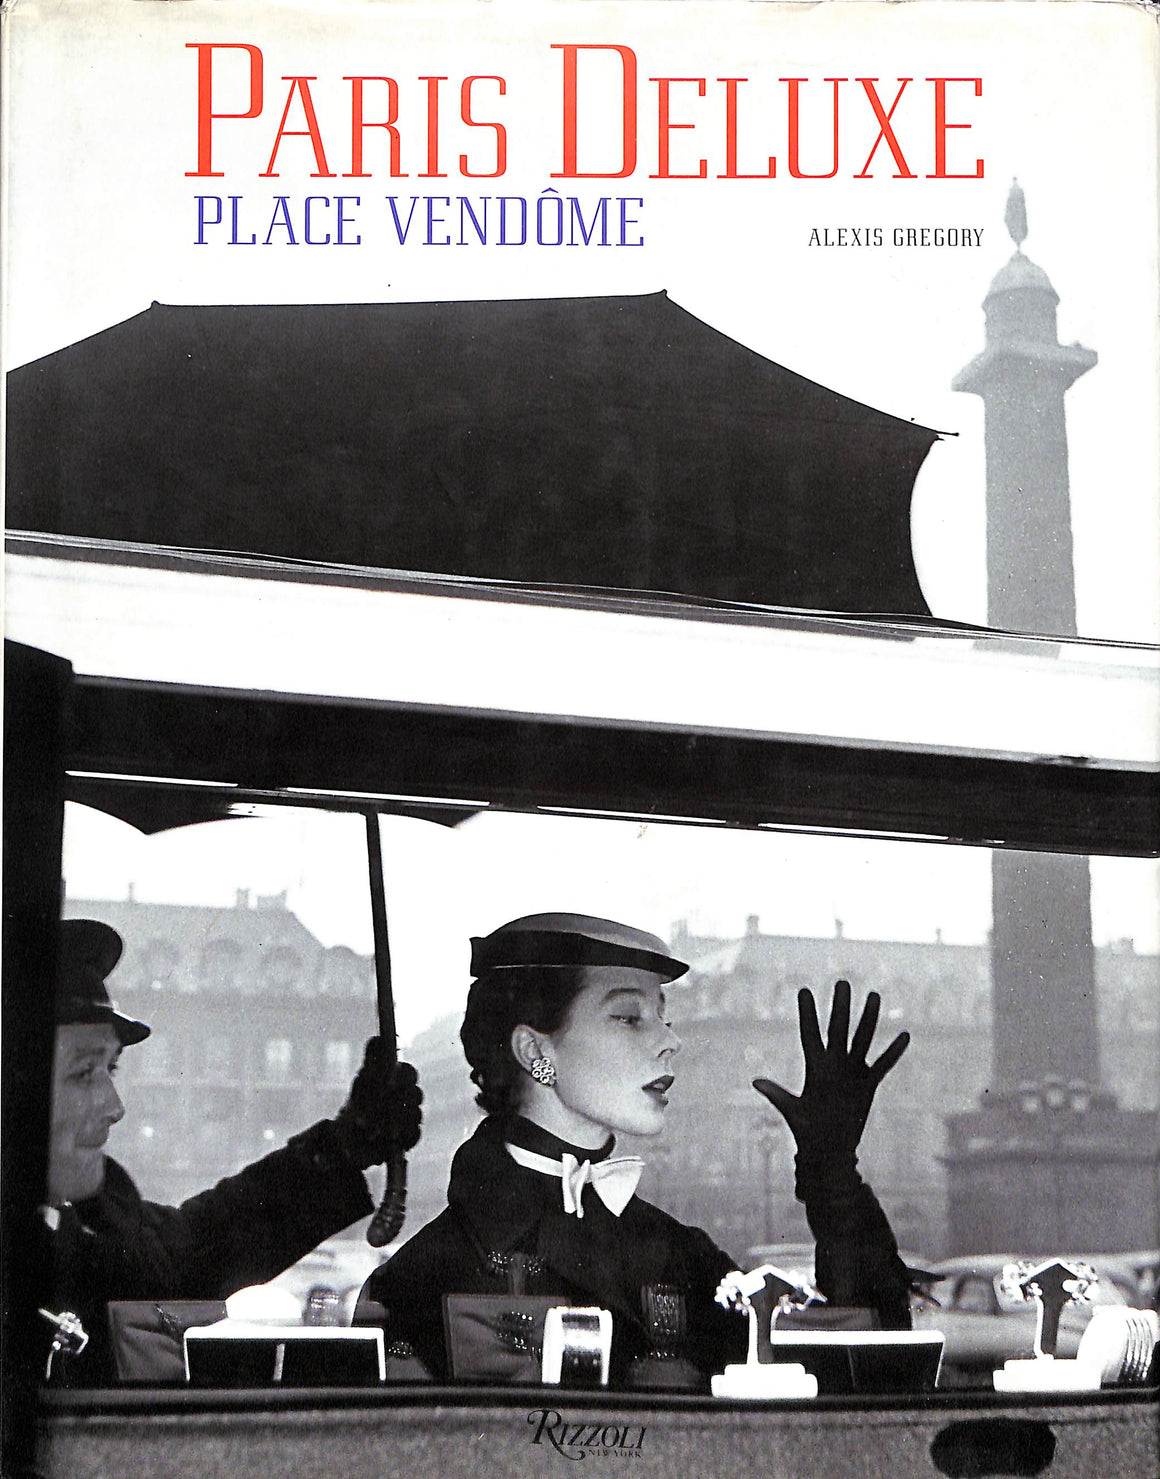 "Paris Deluxe Place Vendome" 1997 GREGORY, Alexis